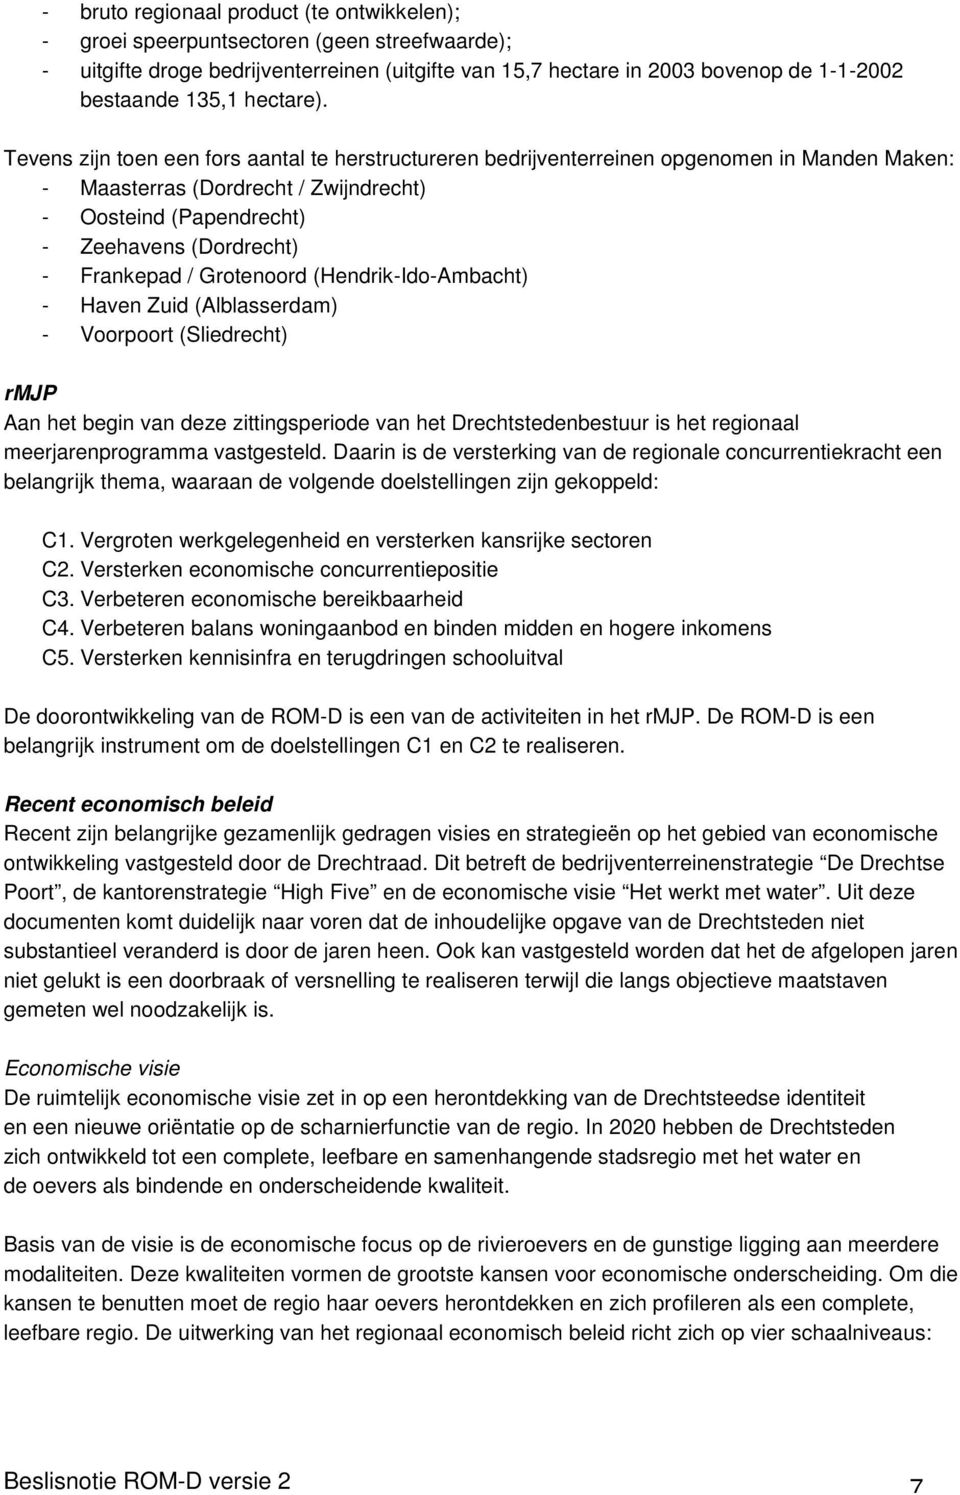 Tevens zijn toen een fors aantal te herstructureren bedrijventerreinen opgenomen in Manden Maken: - Maasterras (Dordrecht / Zwijndrecht) - Oosteind (Papendrecht) - Zeehavens (Dordrecht) - Frankepad /